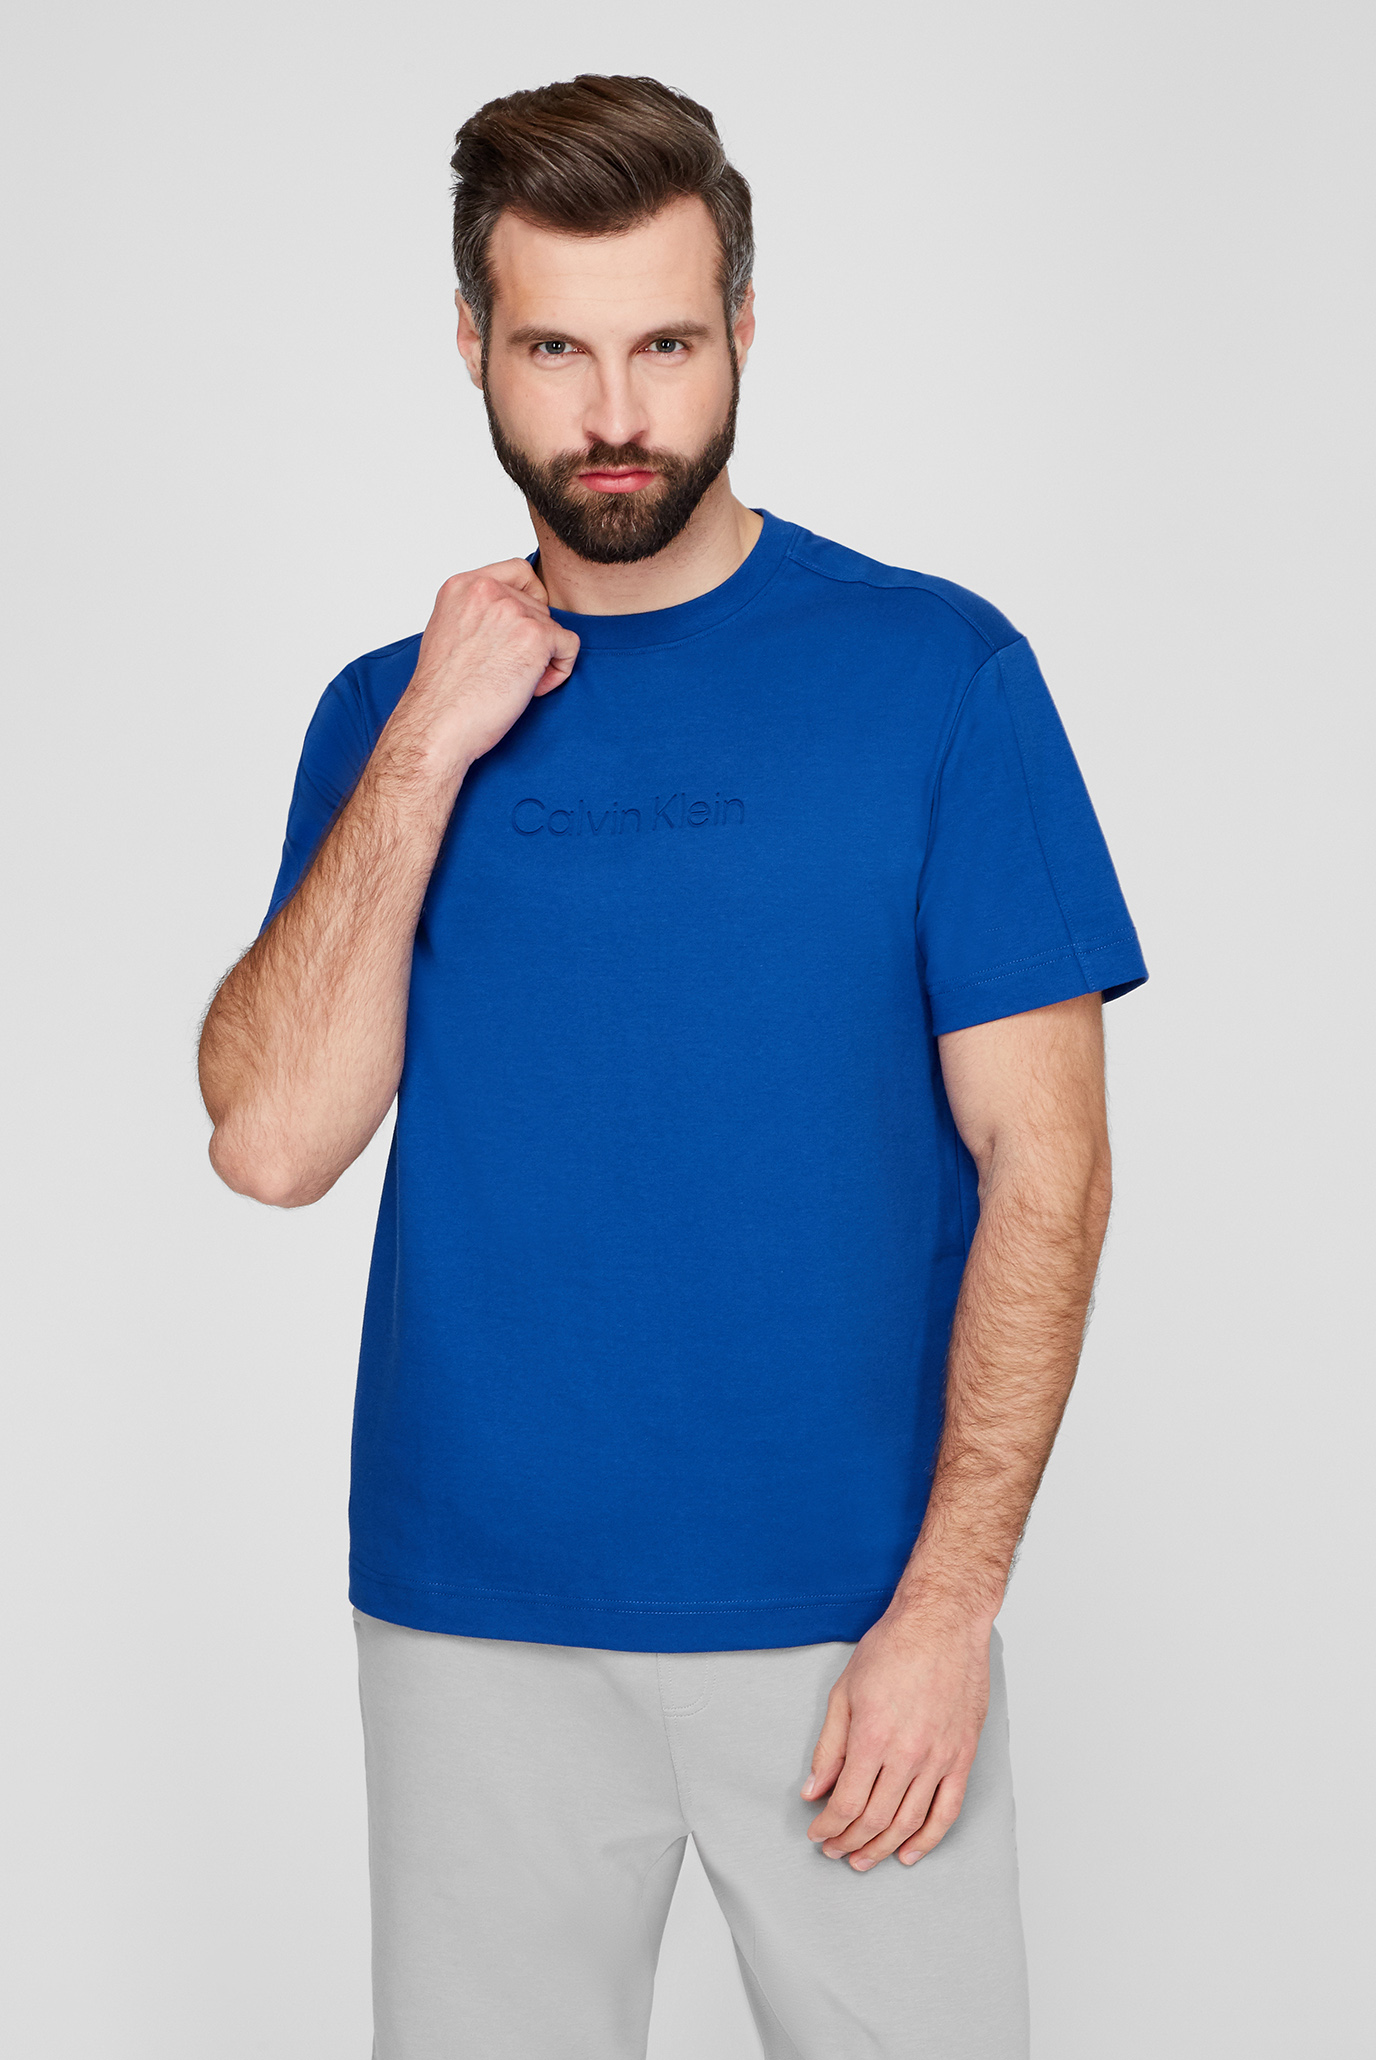 Мужская синяя футболка COMFORT DEBOSSED LOGO 1